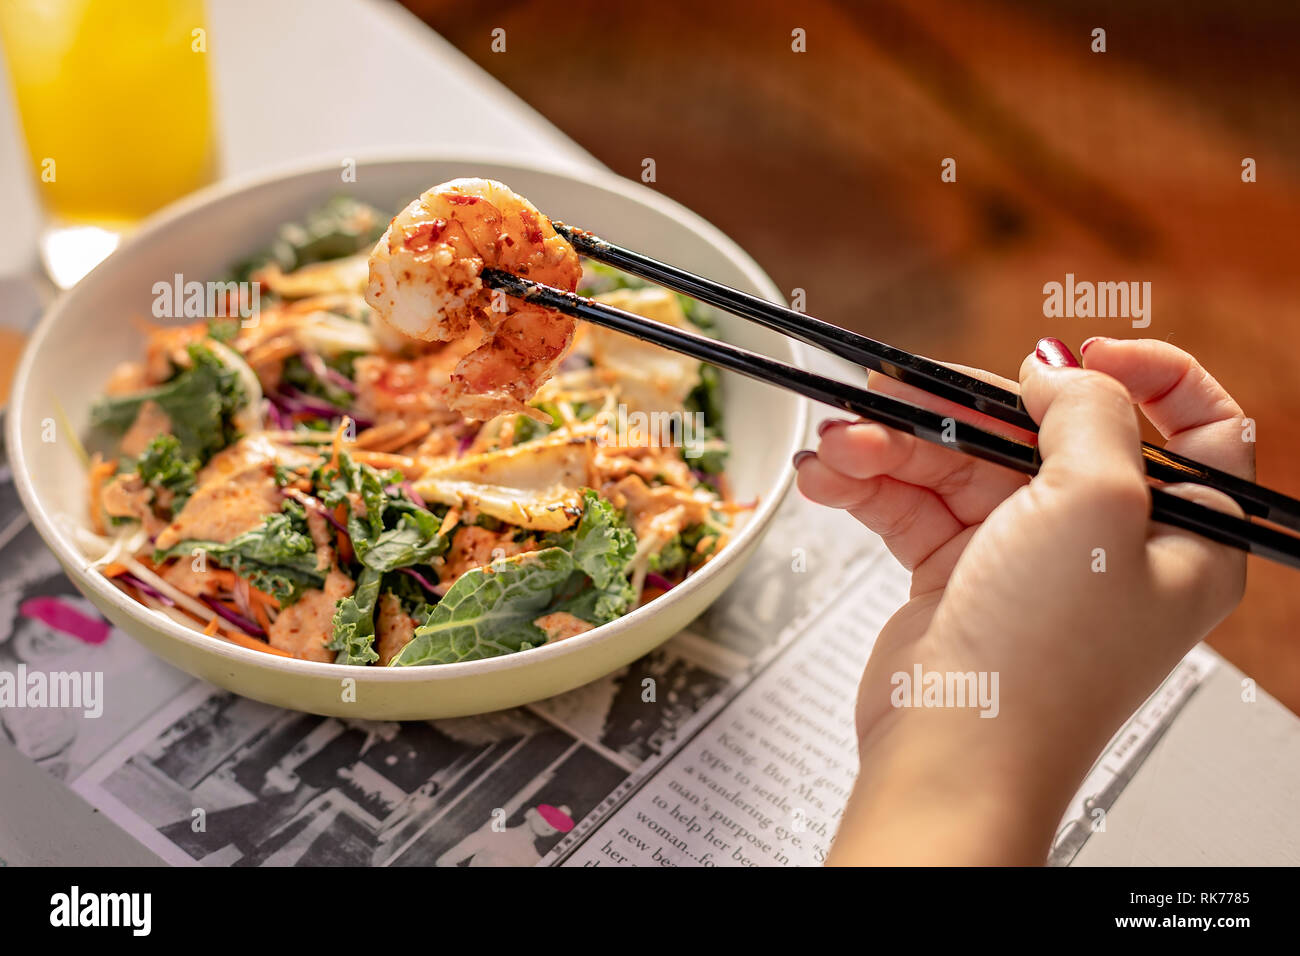 Schöner und schmackhafter Thai-Salat mit Garnelen, Gewürzen, Kales, Gemüse und Fleisch Stockfoto